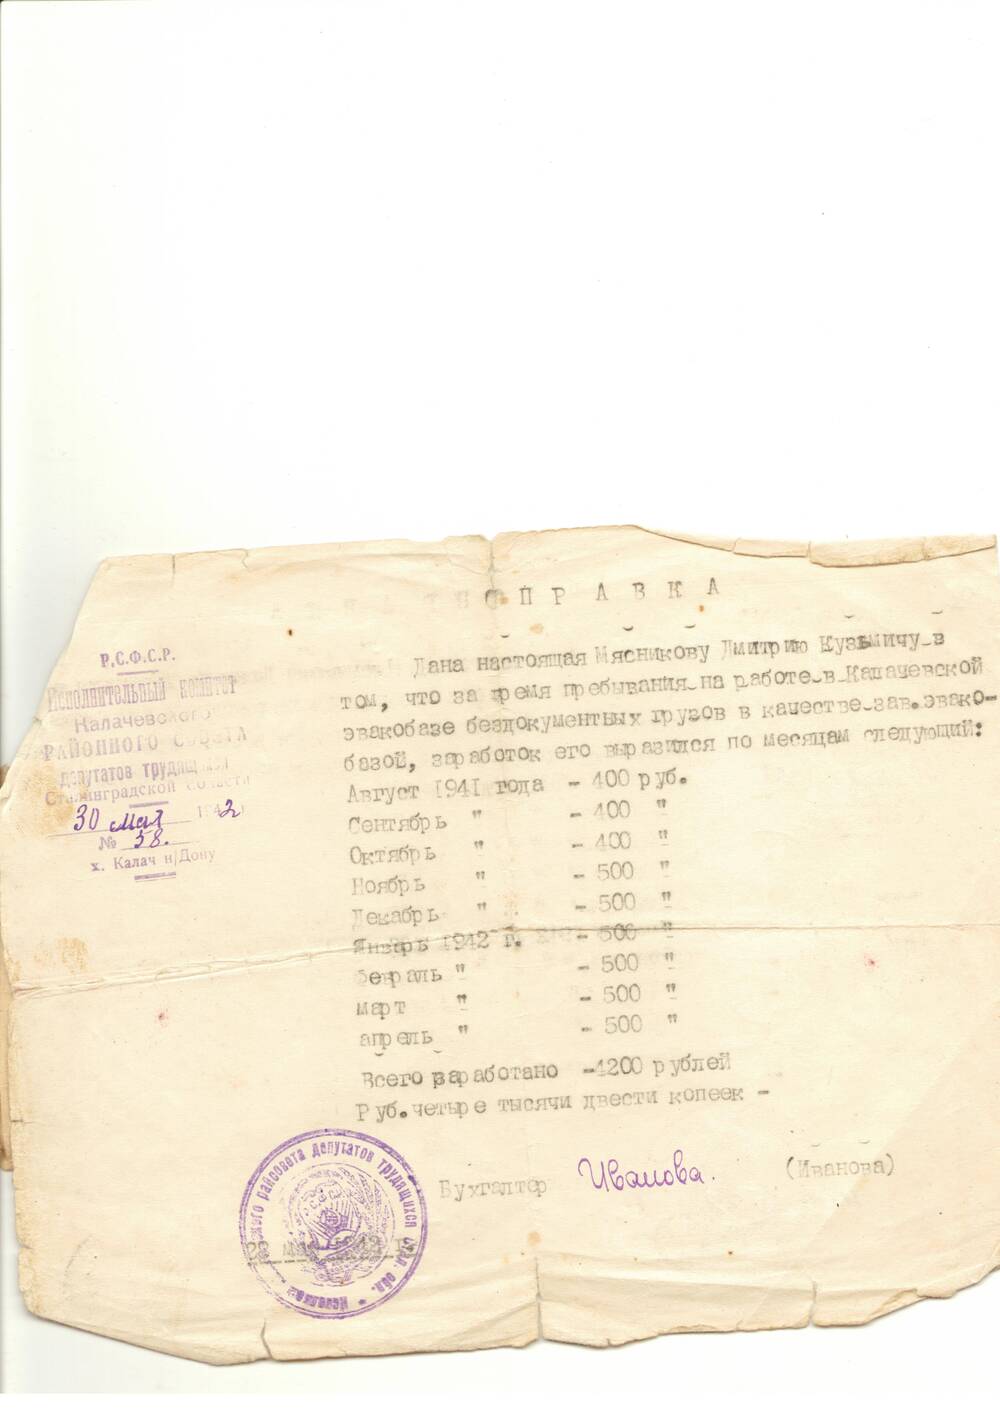 Справка №58 от 30.05.1942 года  Мясникова Д. К., подтверждающая, что он работал в качестве заведующего эвакобазой в Калаче.